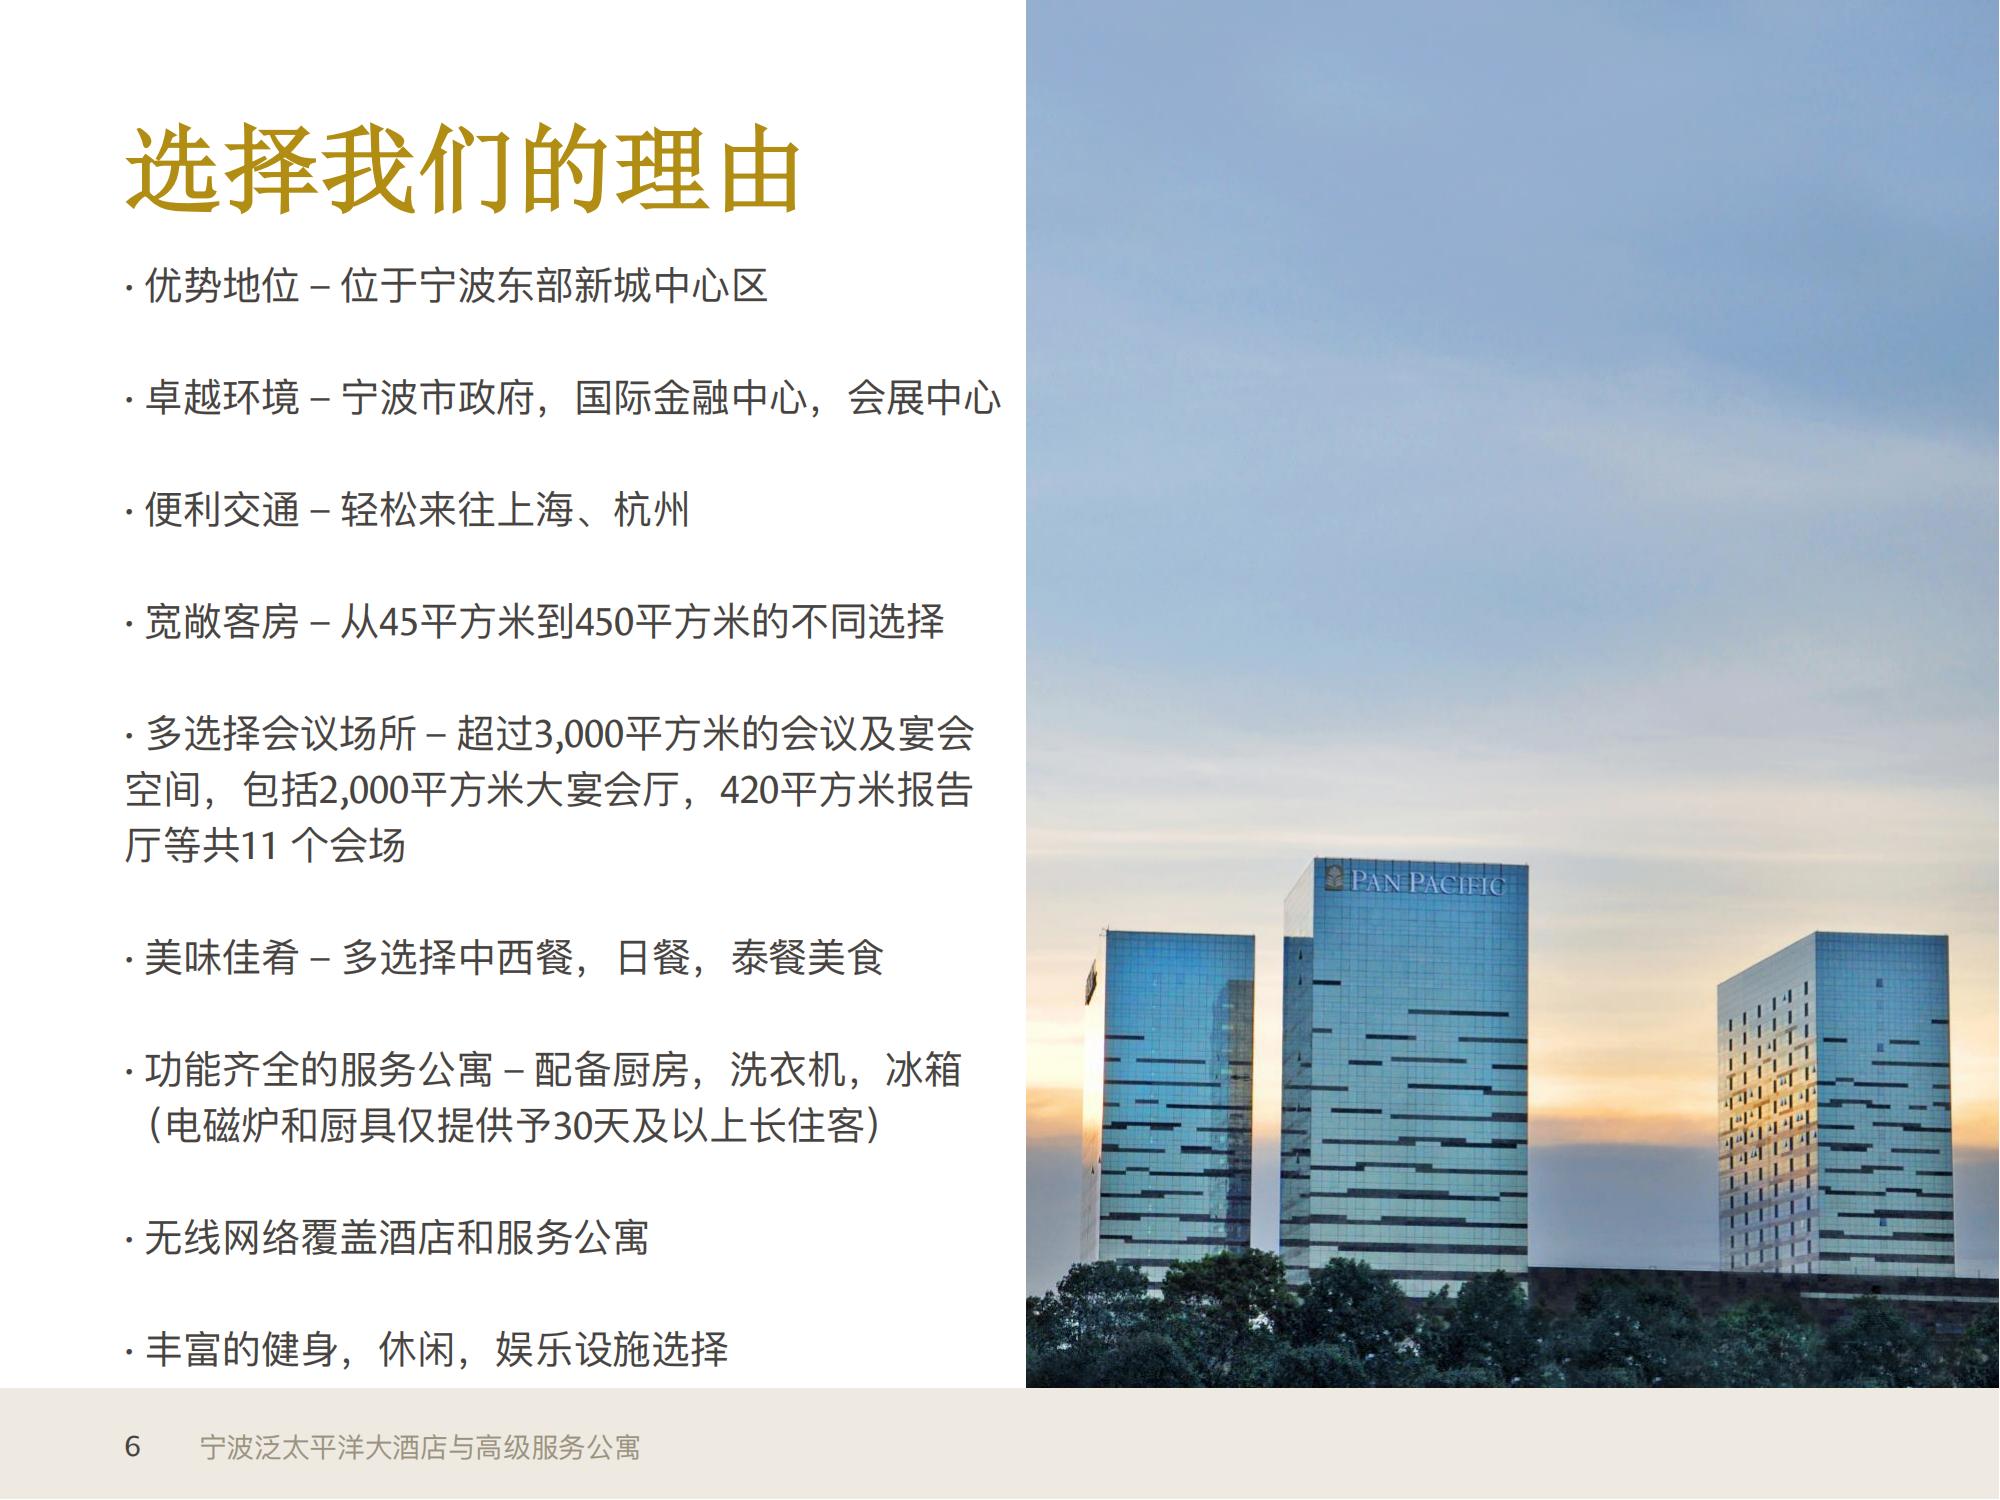 1_宁波泛太平洋大酒店与高级服务公寓信息展示+宁波热门景点20211223_05.jpg